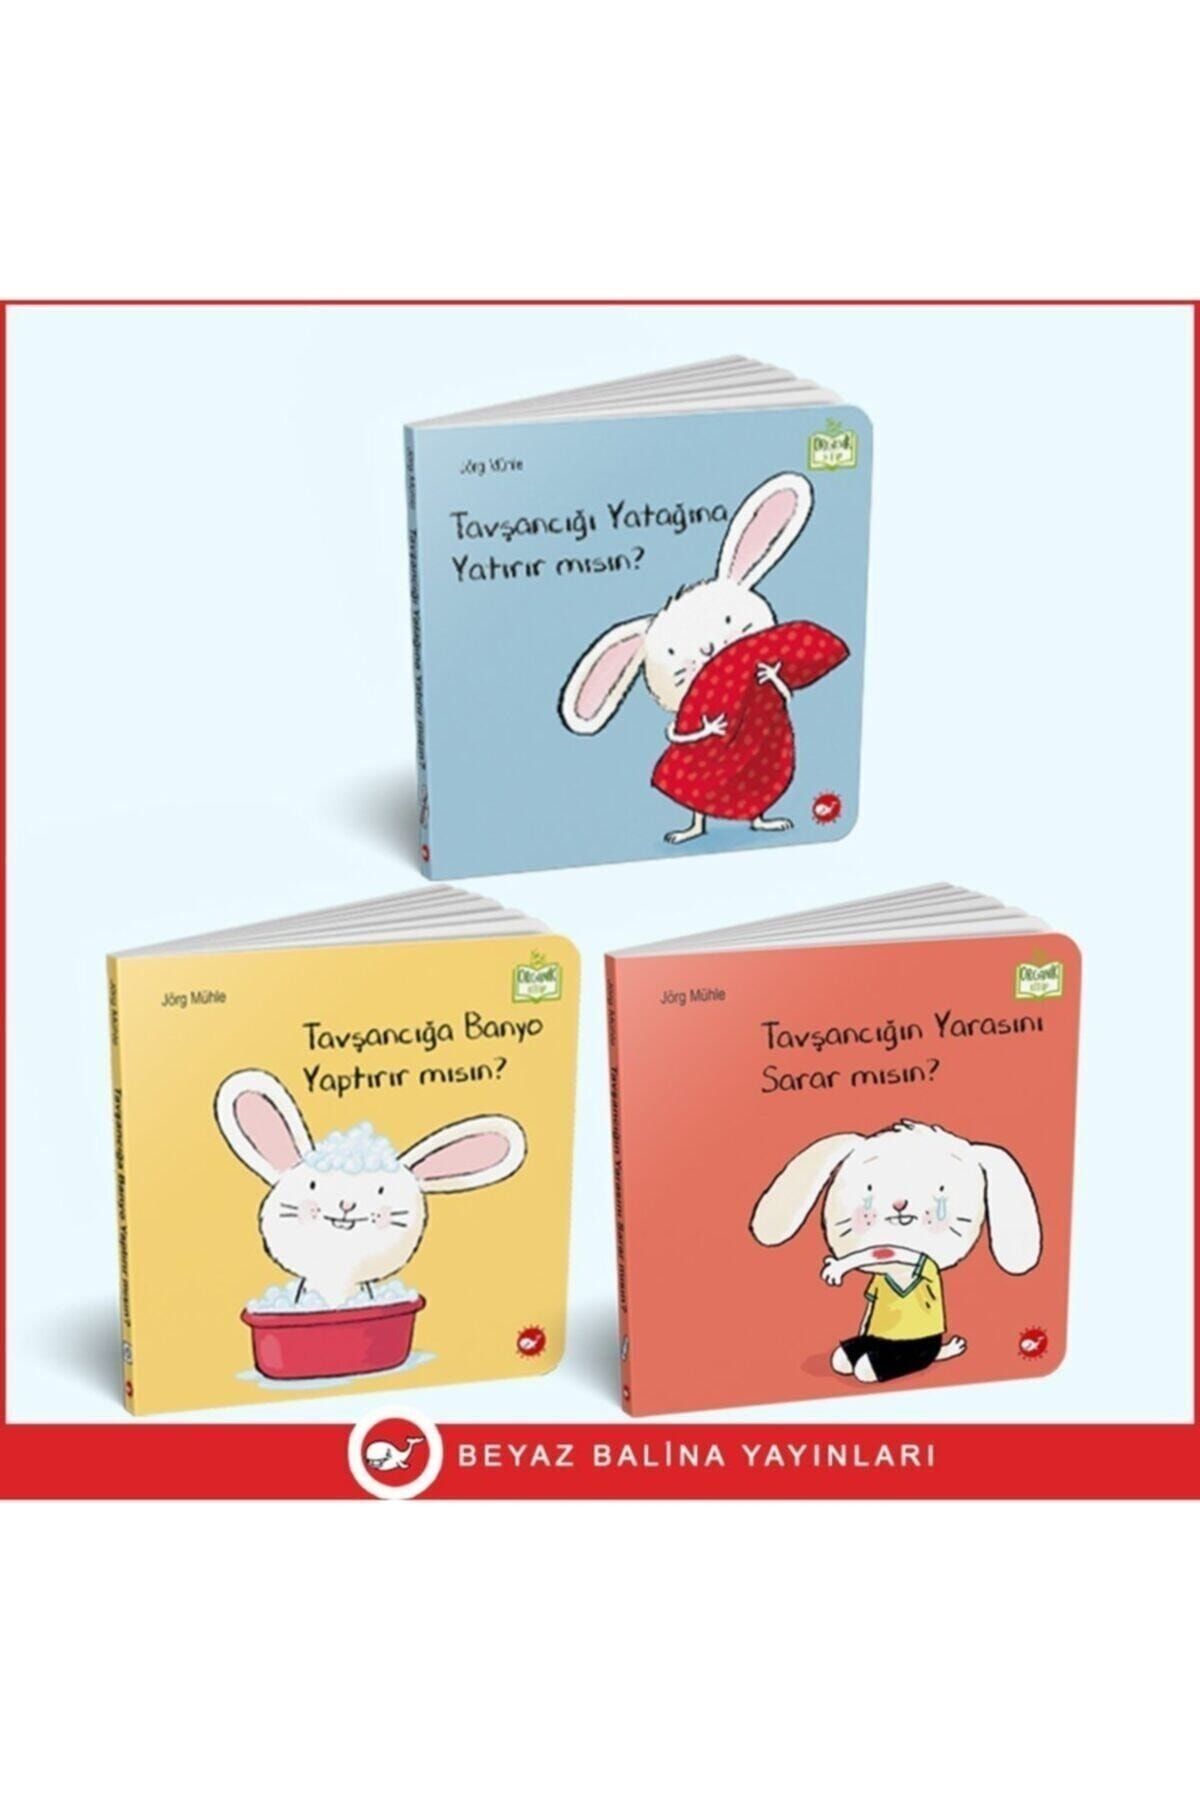 Beyaz Balina Yayınları 0-3 Yaş Resimli Interaktif Çocuk Kitapları Seti / Tavşancık Serisi